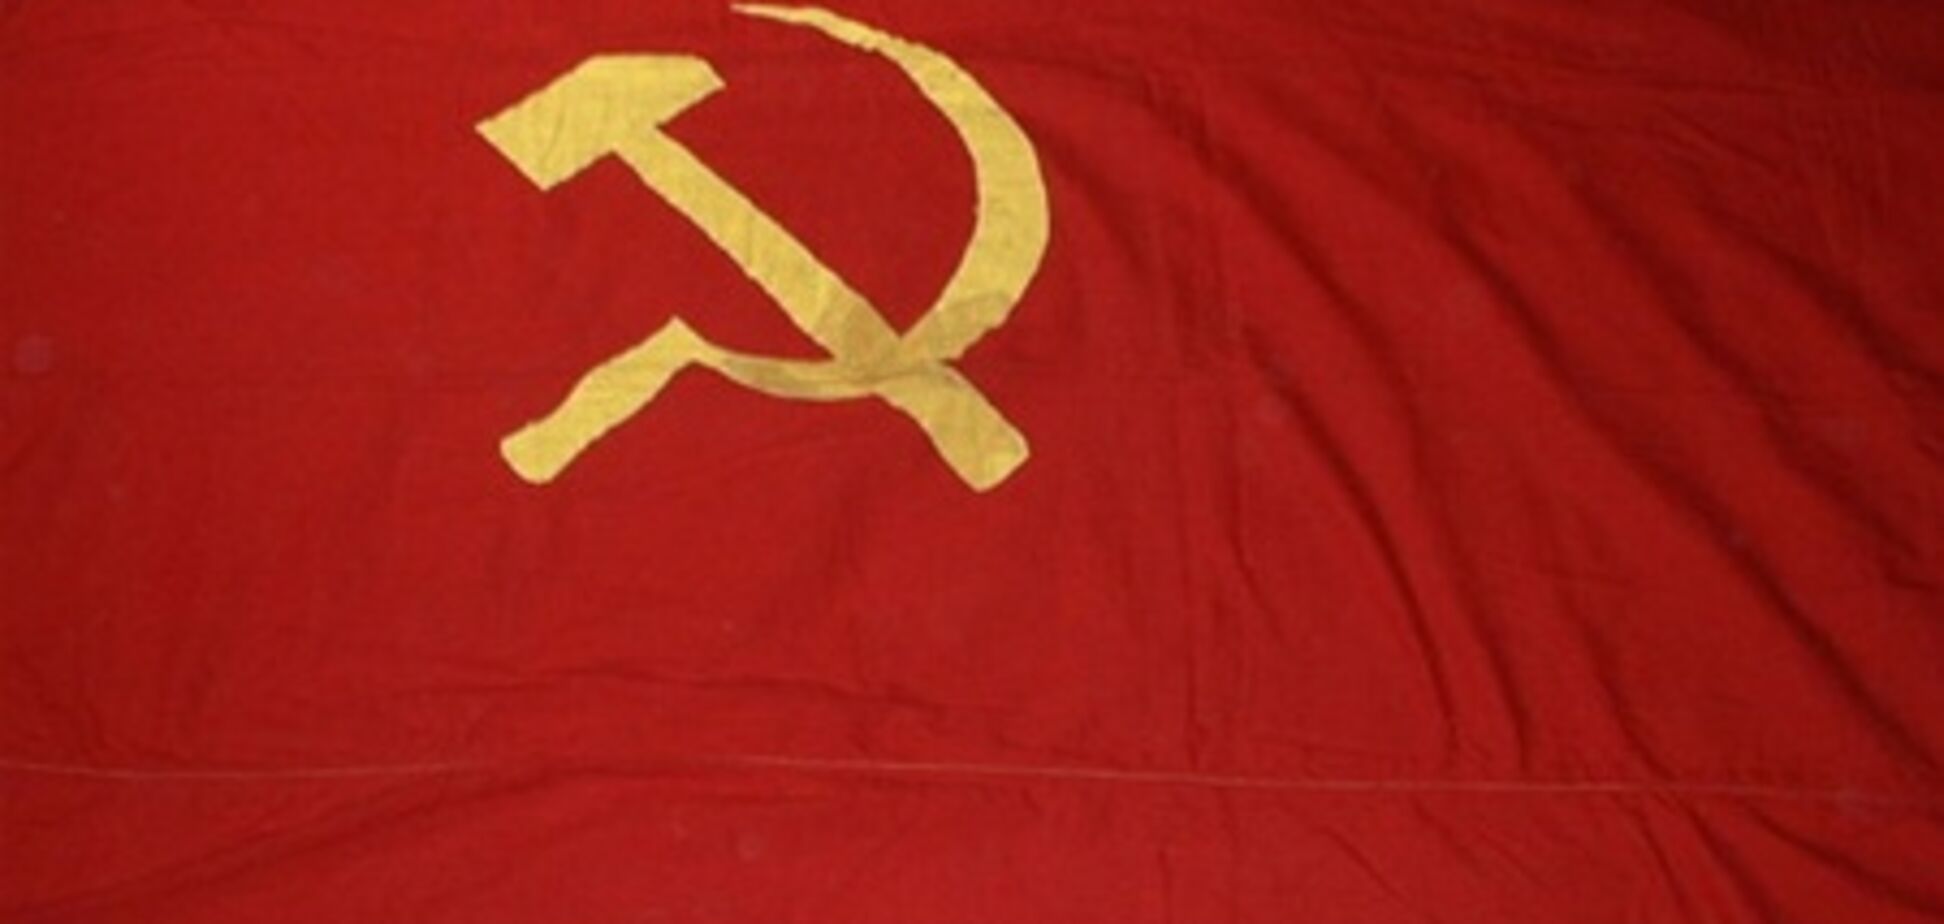 Депутат-коммунист едва не спровоцировал ДТП и побежал с красным флагом на 'свободовцев'